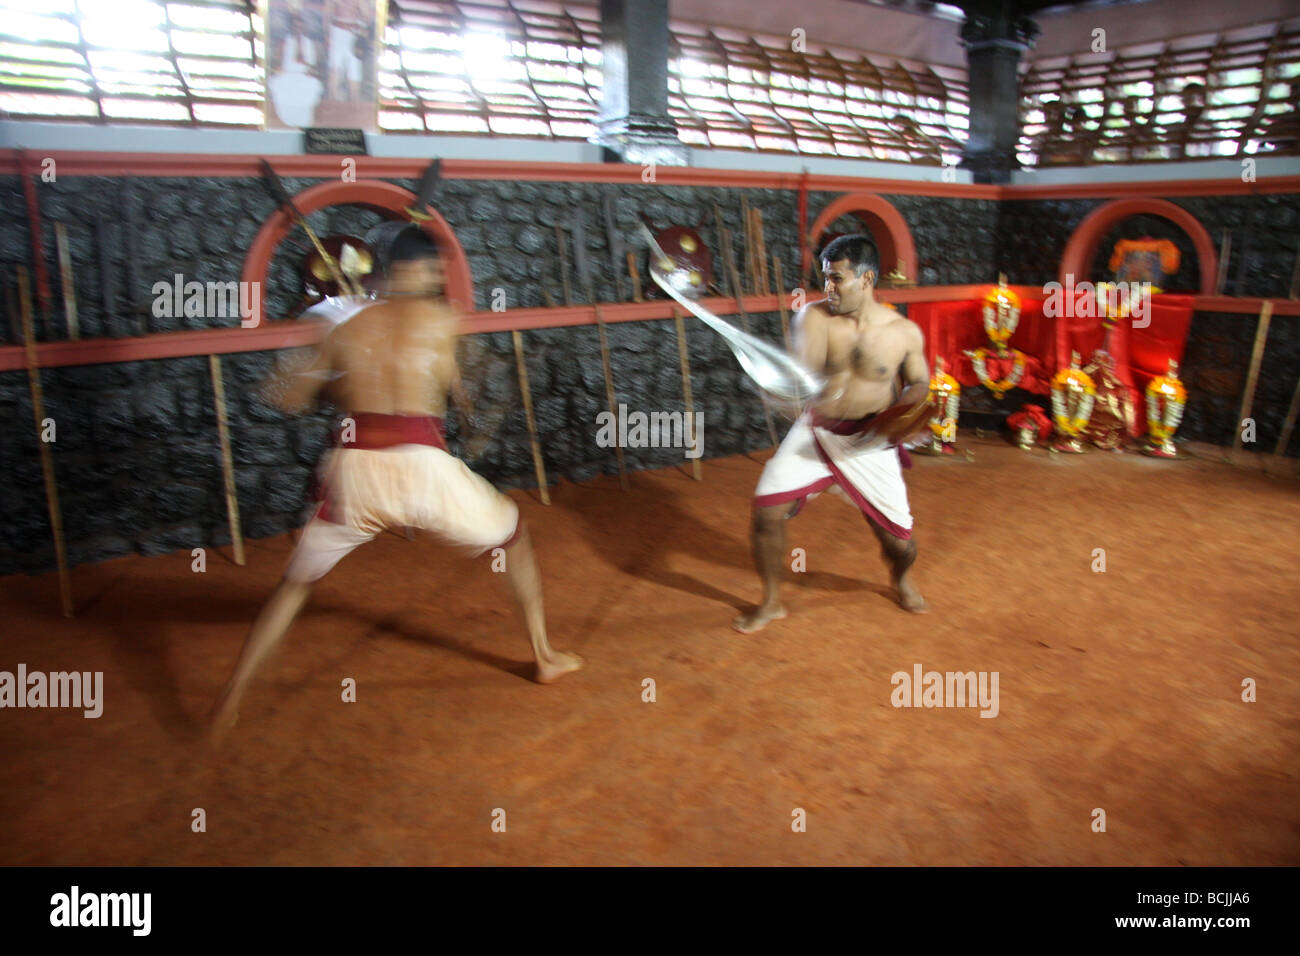 La dimostrazione di arte di Martial cochin india Foto Stock